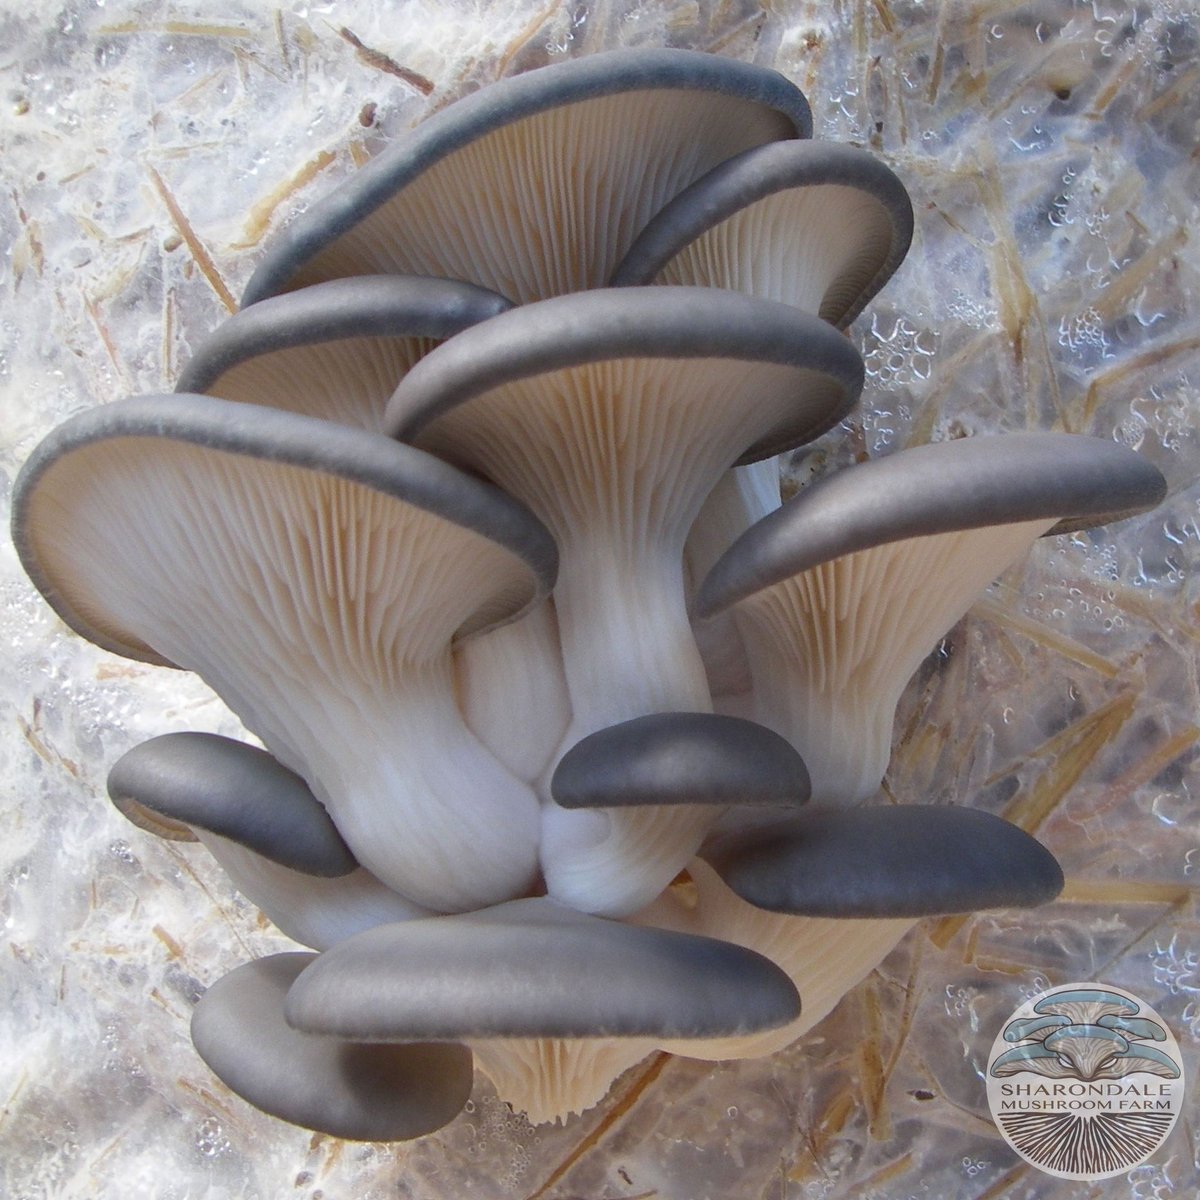 blue-oyster-mushrooms_1200x1200.jpg?v=15